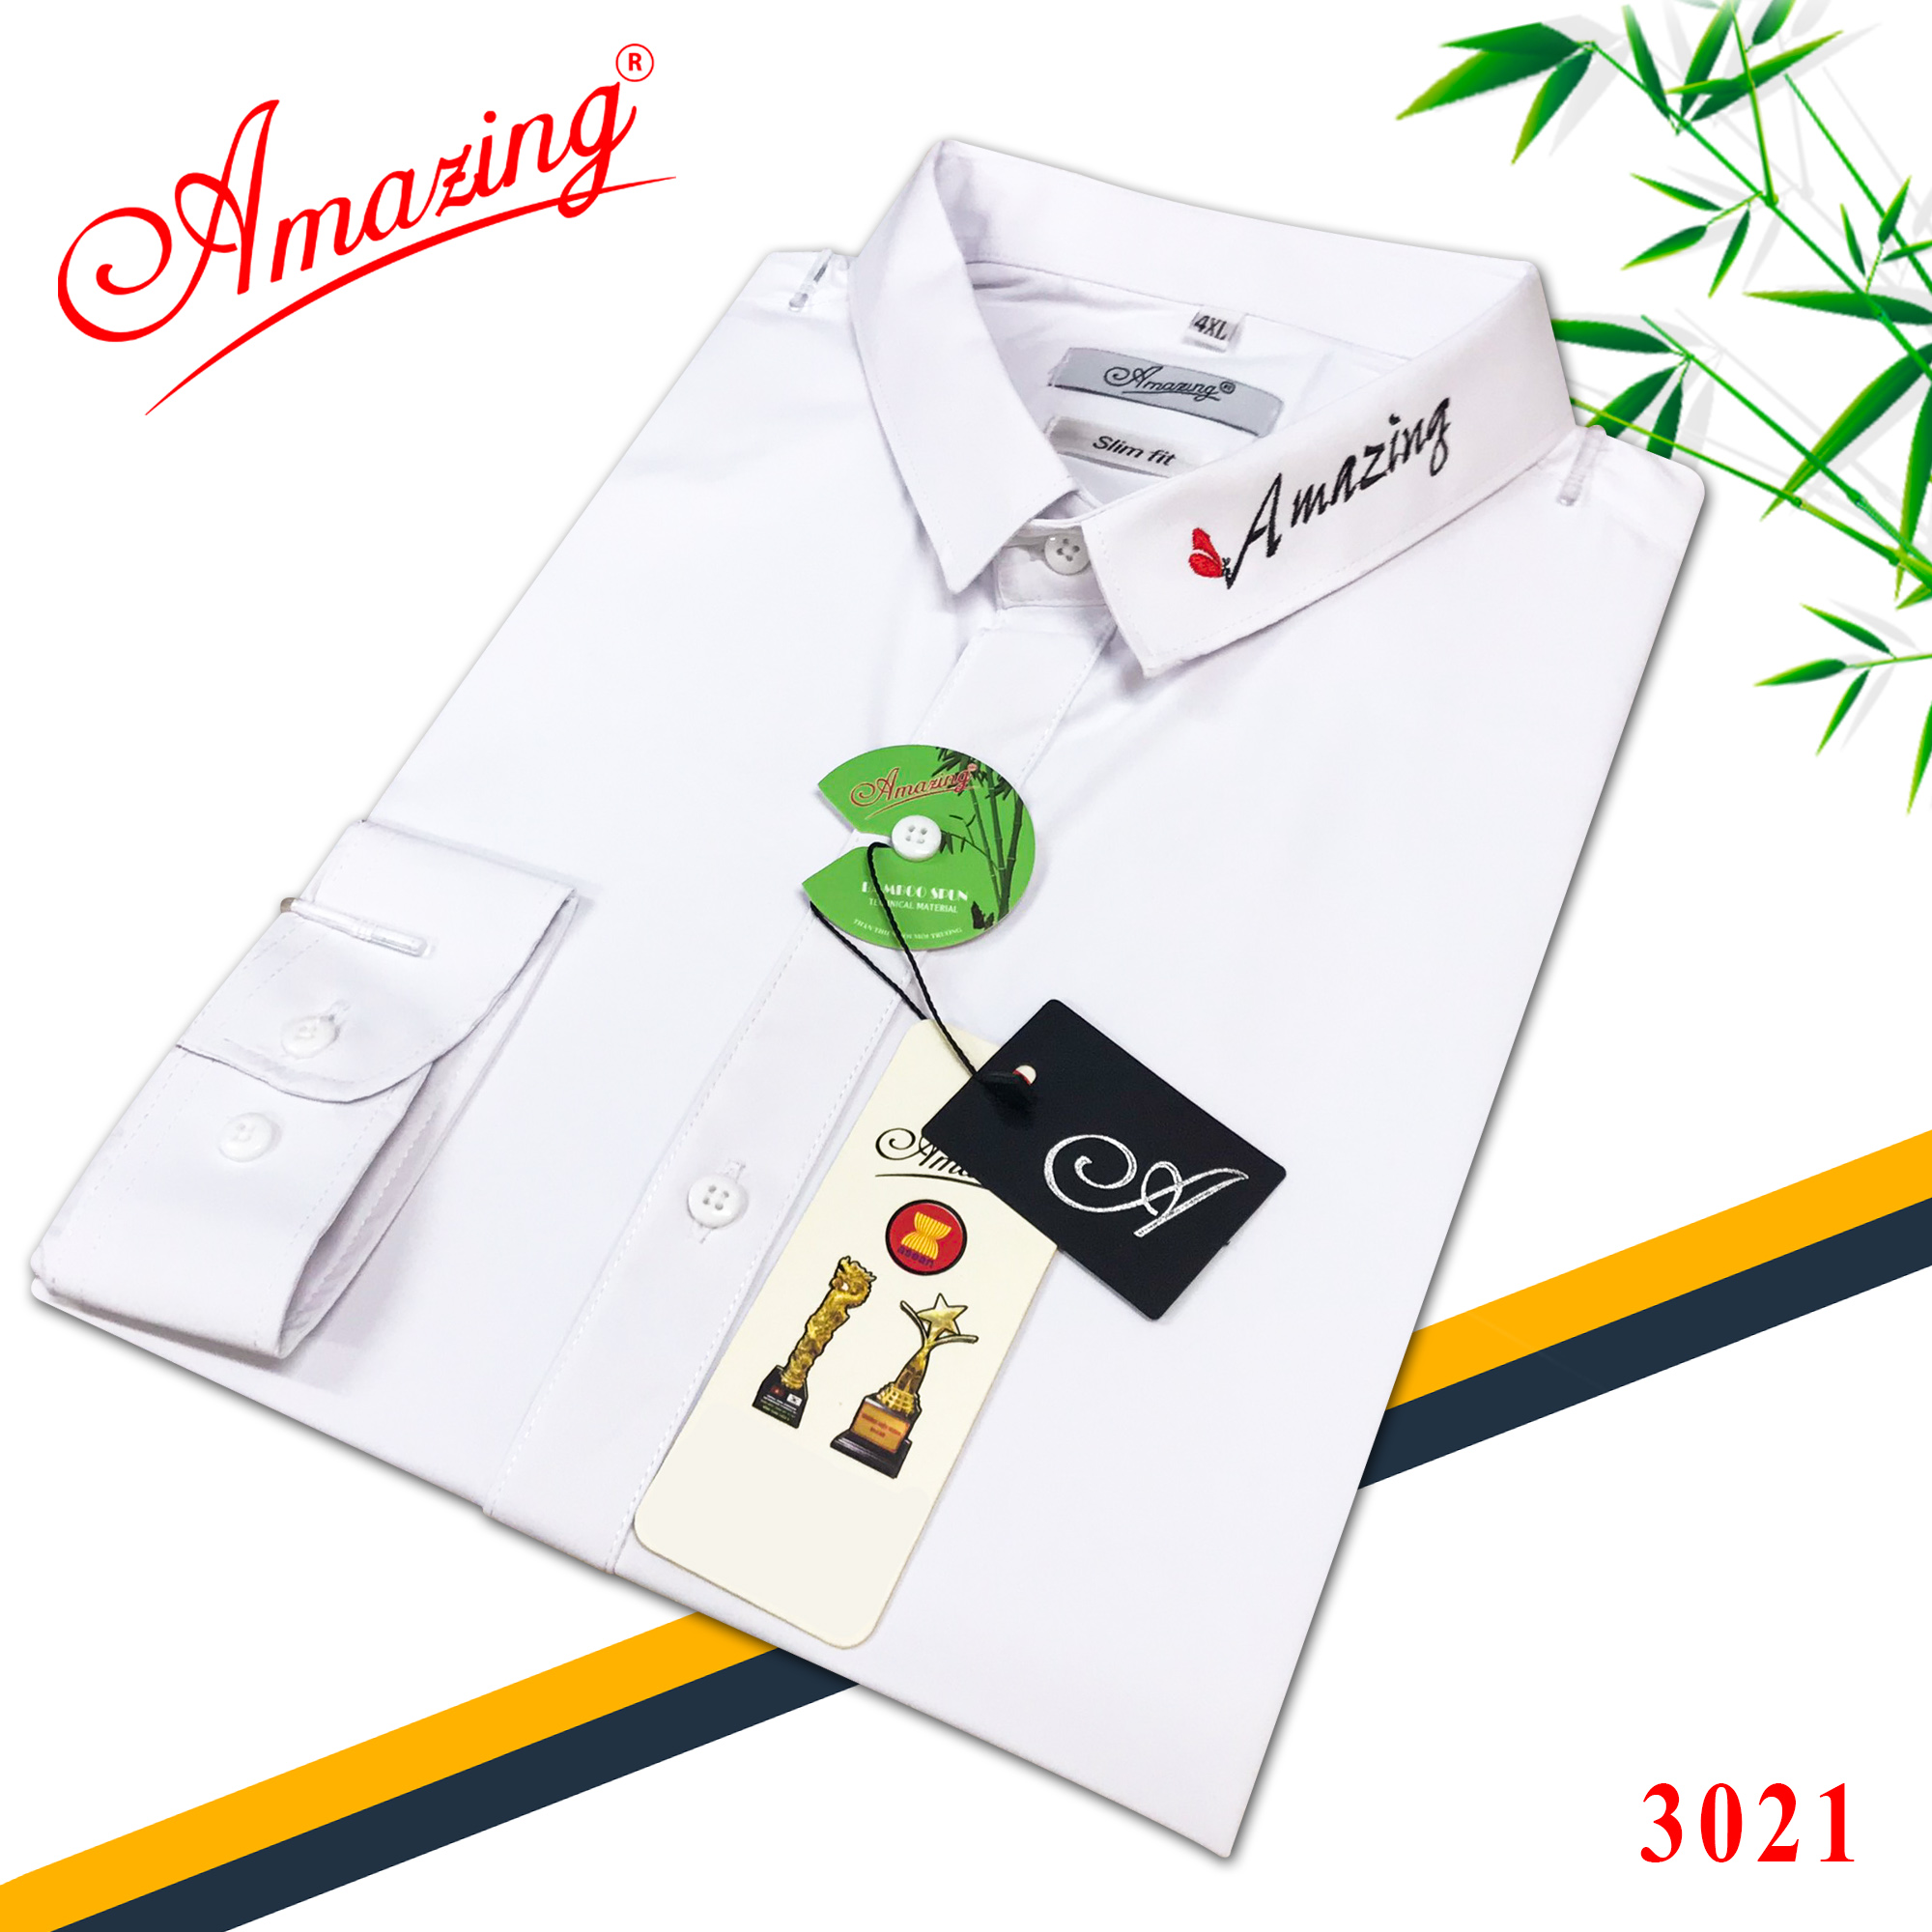 Áo sơ mi nam thêu logo Amazing, màu đen và trắng thanh lịch, vải bamboo mềm mịn, form body Hàn Quốc tôn dáng